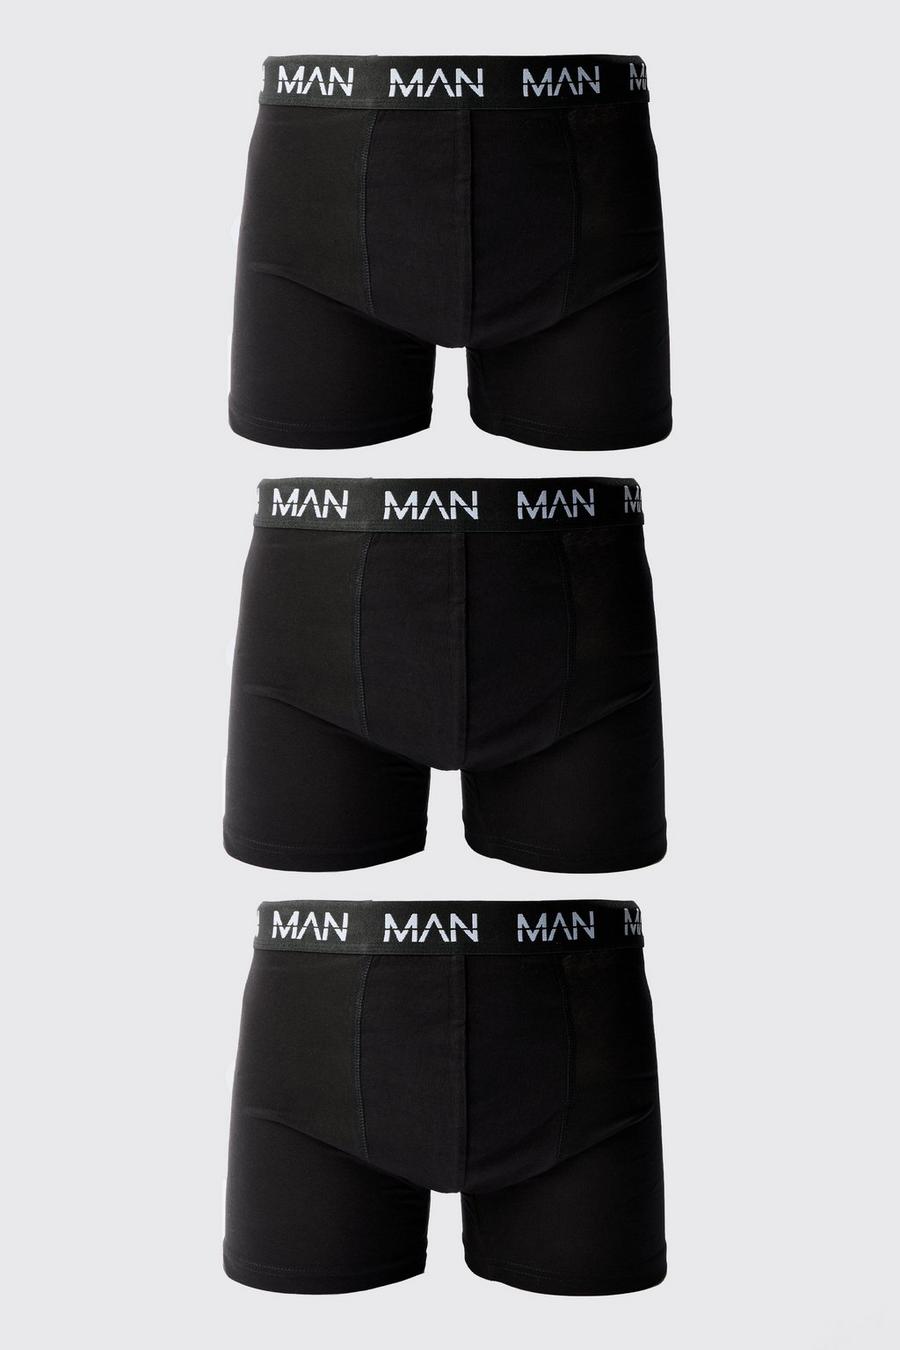 Pack de 3 calzoncillos MAN de largo medio, Black image number 1